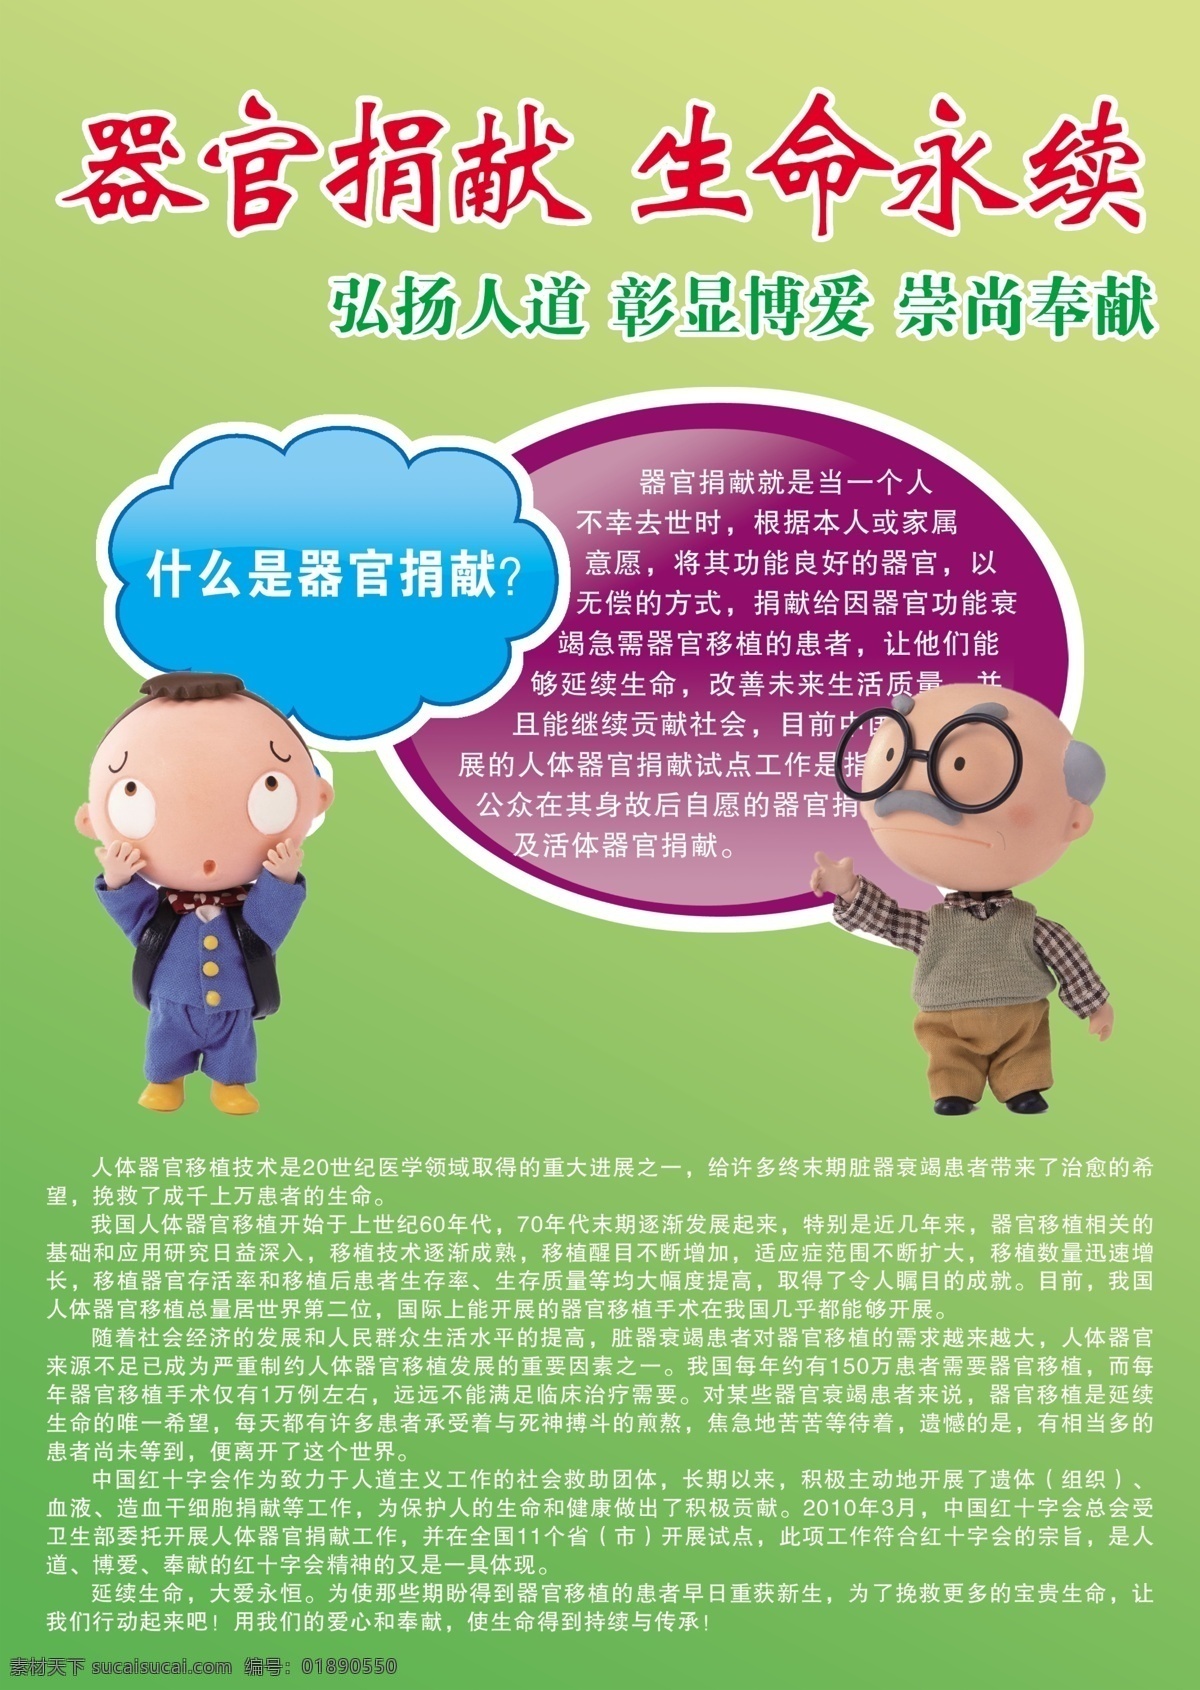 捐献 器官 广告宣传 中文字 人物 花纹效果 蓝色色块 紫红色色块 绿色渐变背景